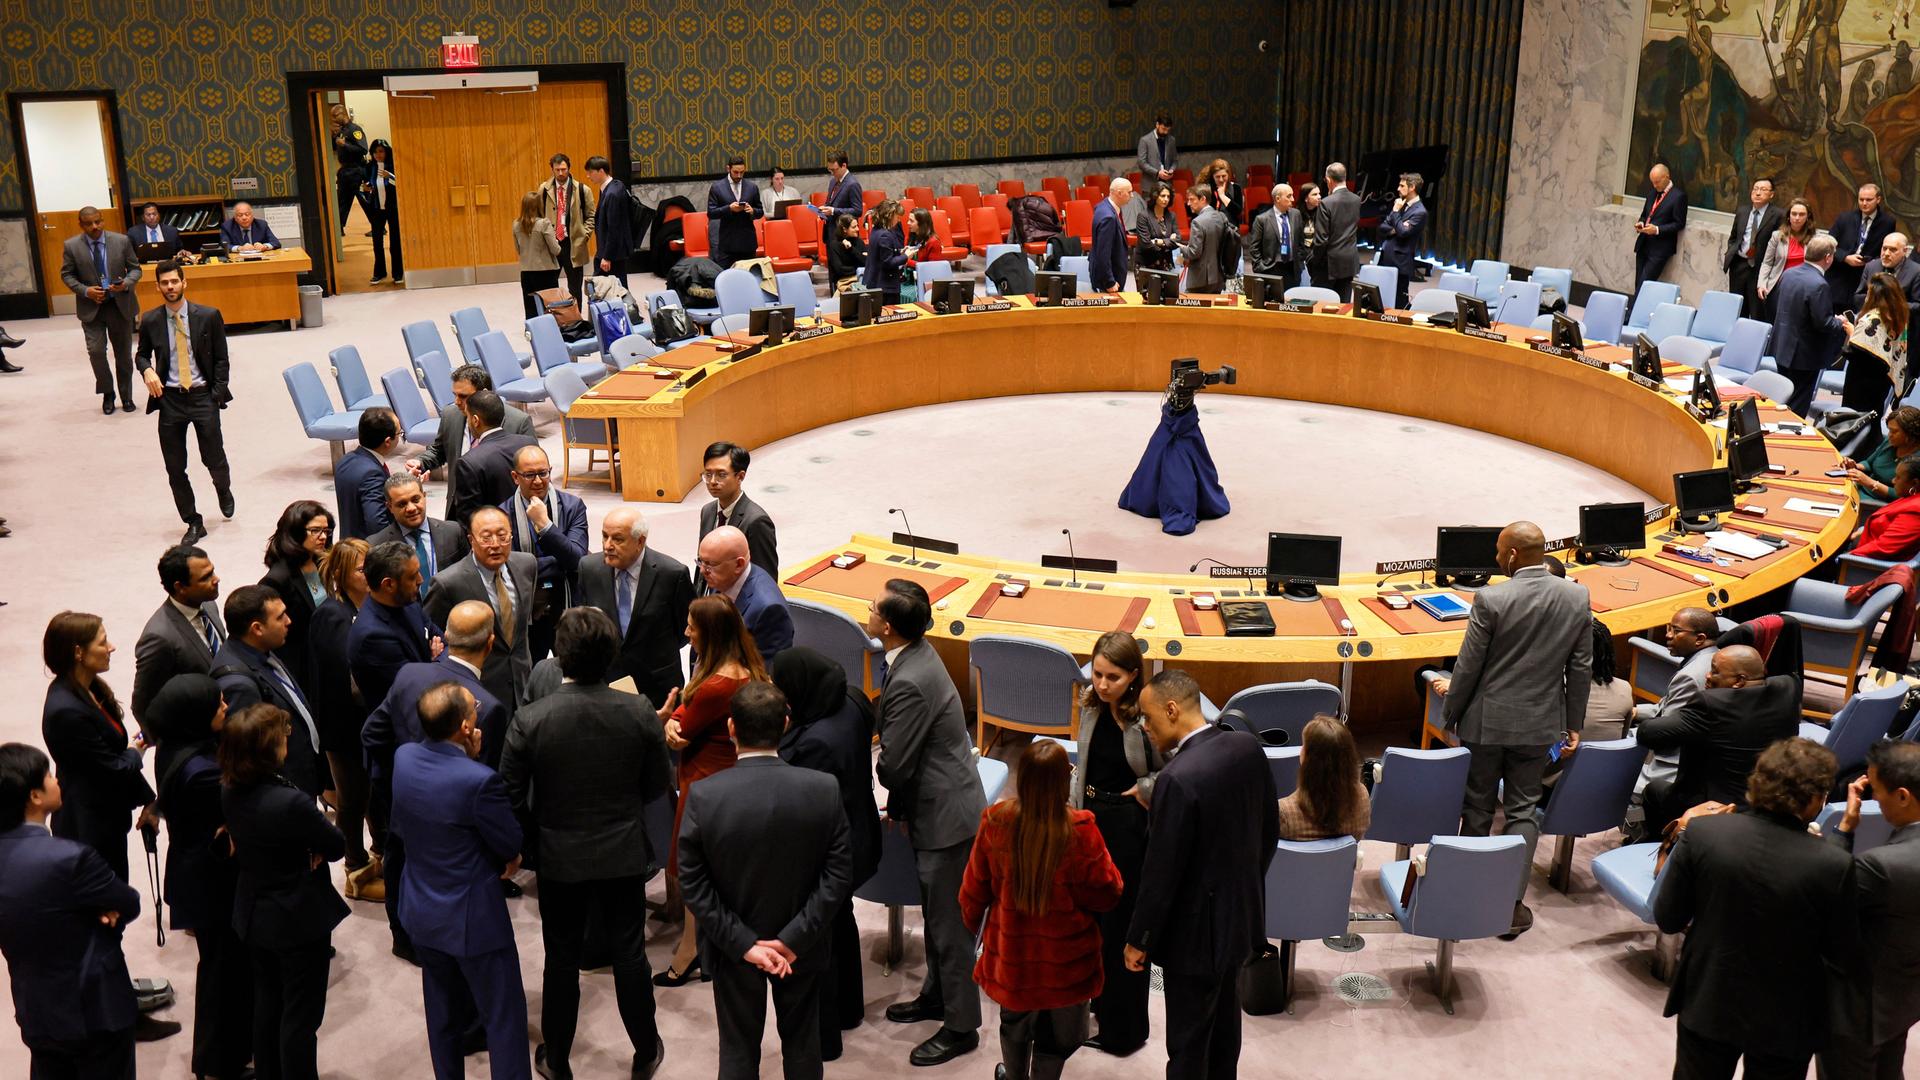 Mitglieder des UN Sicherheitsrats stehen während einer Pause um den runden Beratungstisch herum und unterhalten sich in Grüppchen.